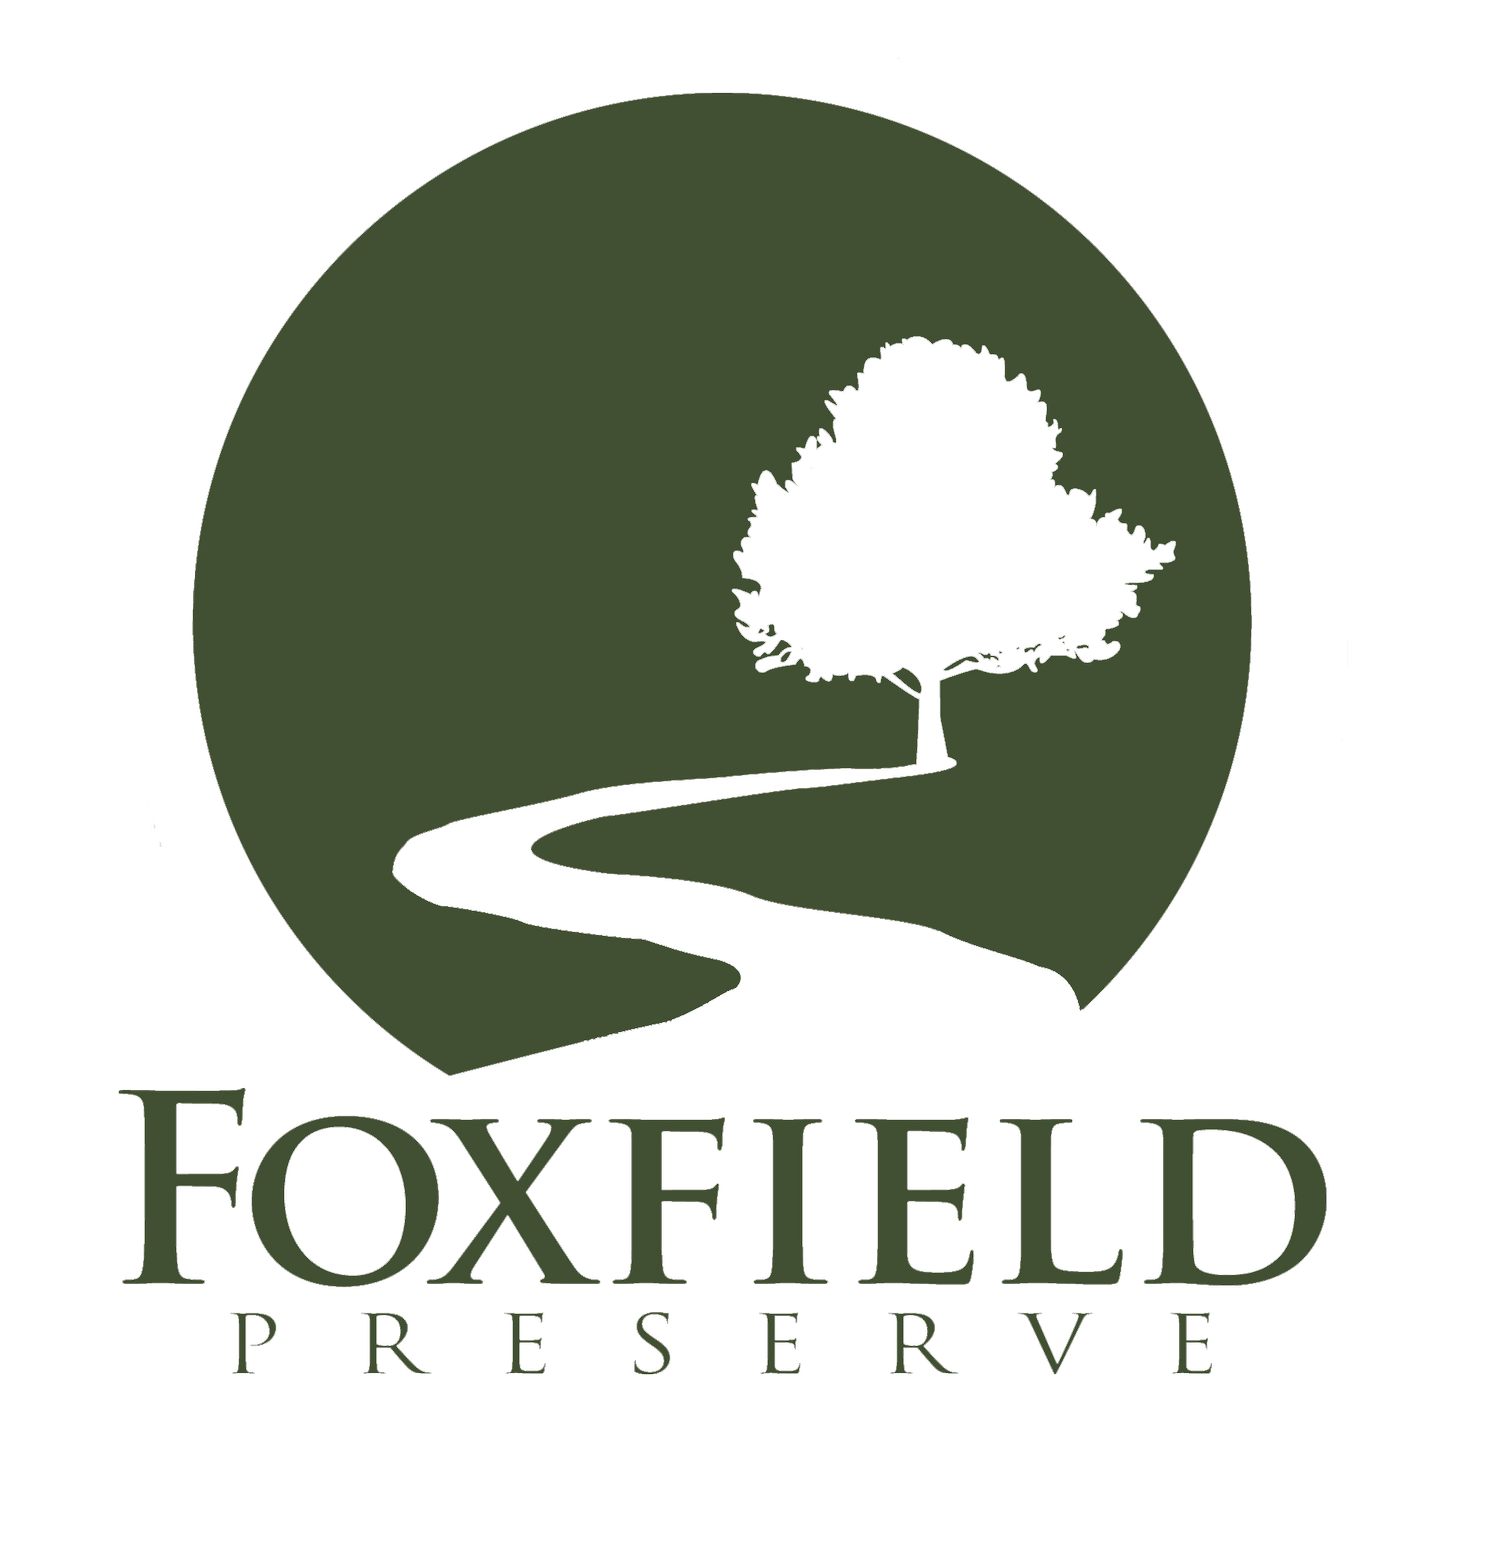 Foxfield Preserve